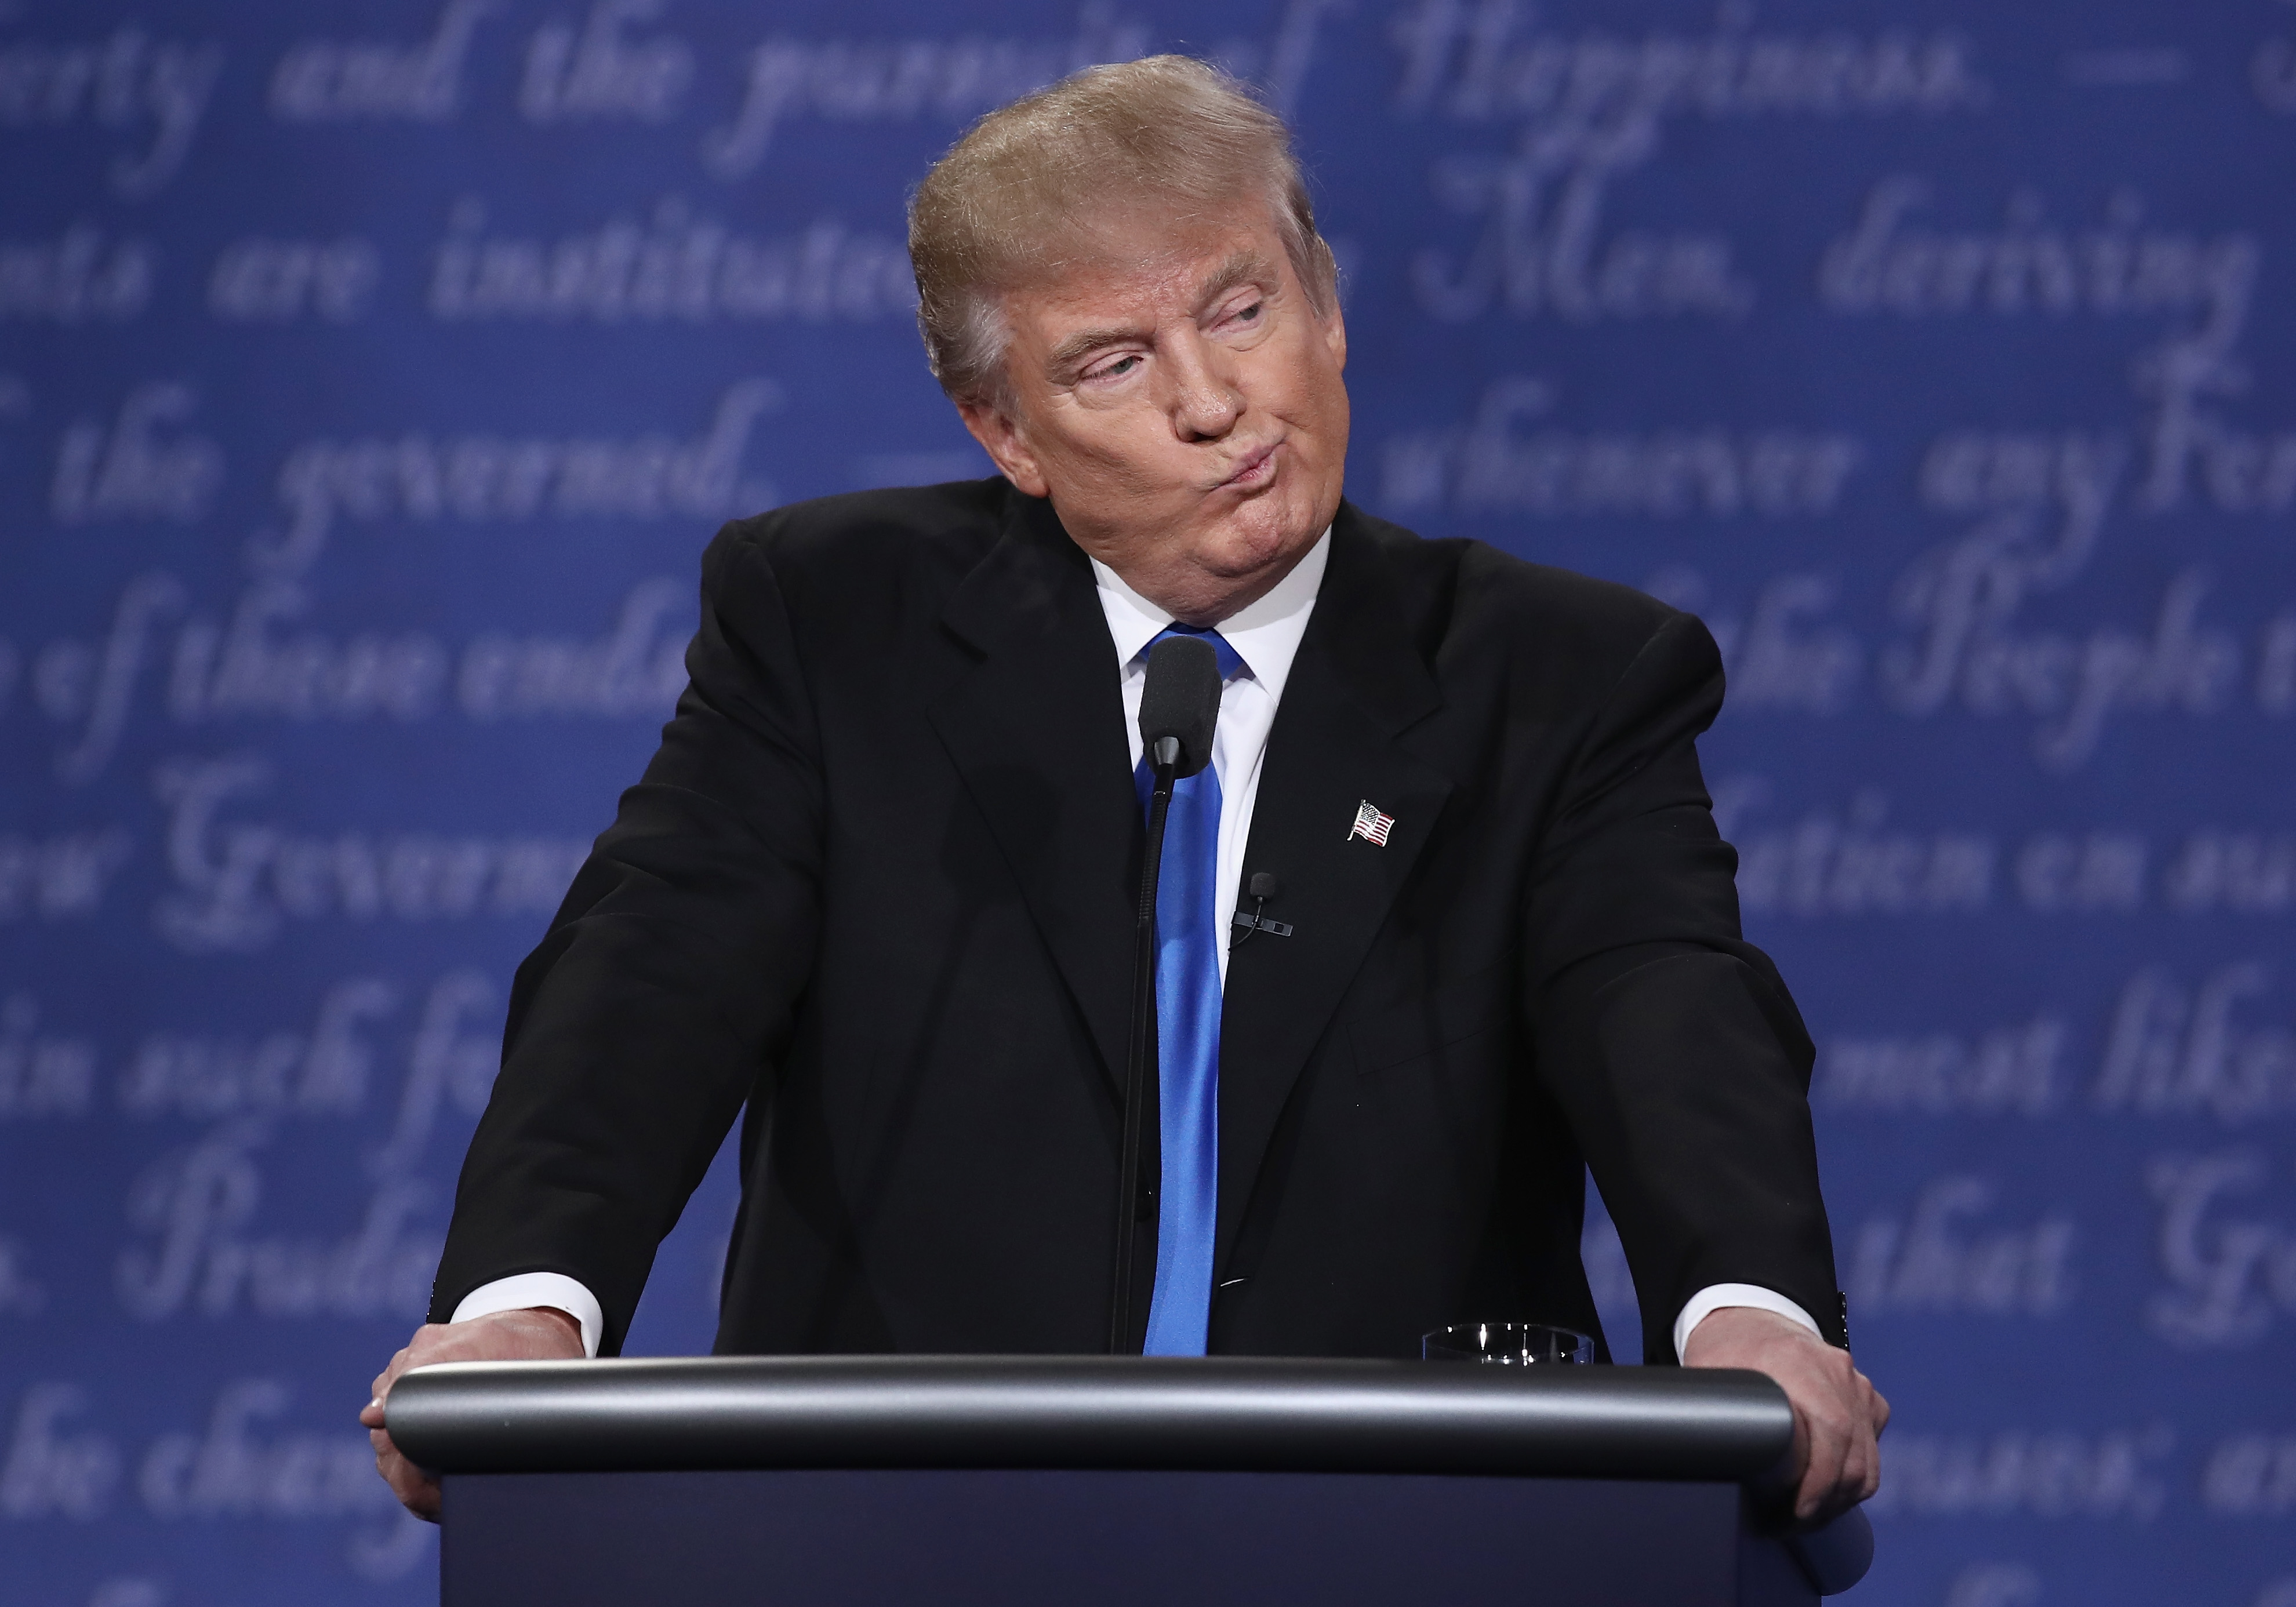 Republican presidential nominee Donald Trump gestures during the Presidential Debate at Hofstra University in Hempstead, N.Y., on Sept. 26, 2016.